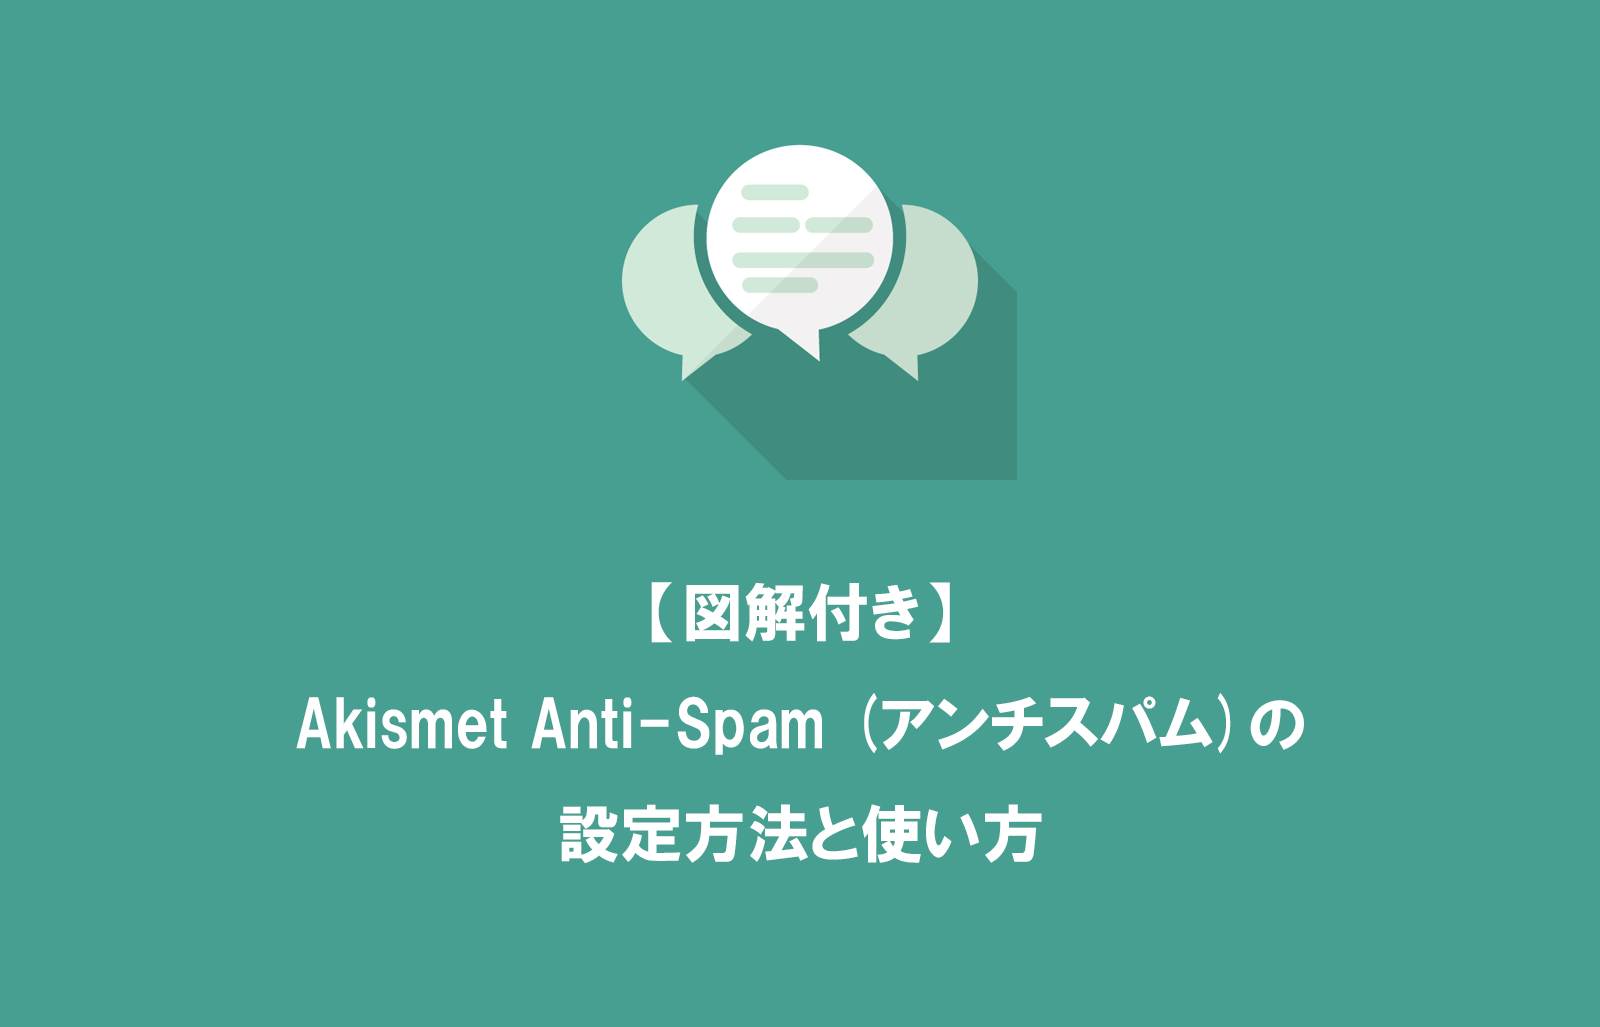 【図解付き】Akismet Anti-Spam (アンチスパム)の設定方法と使い方